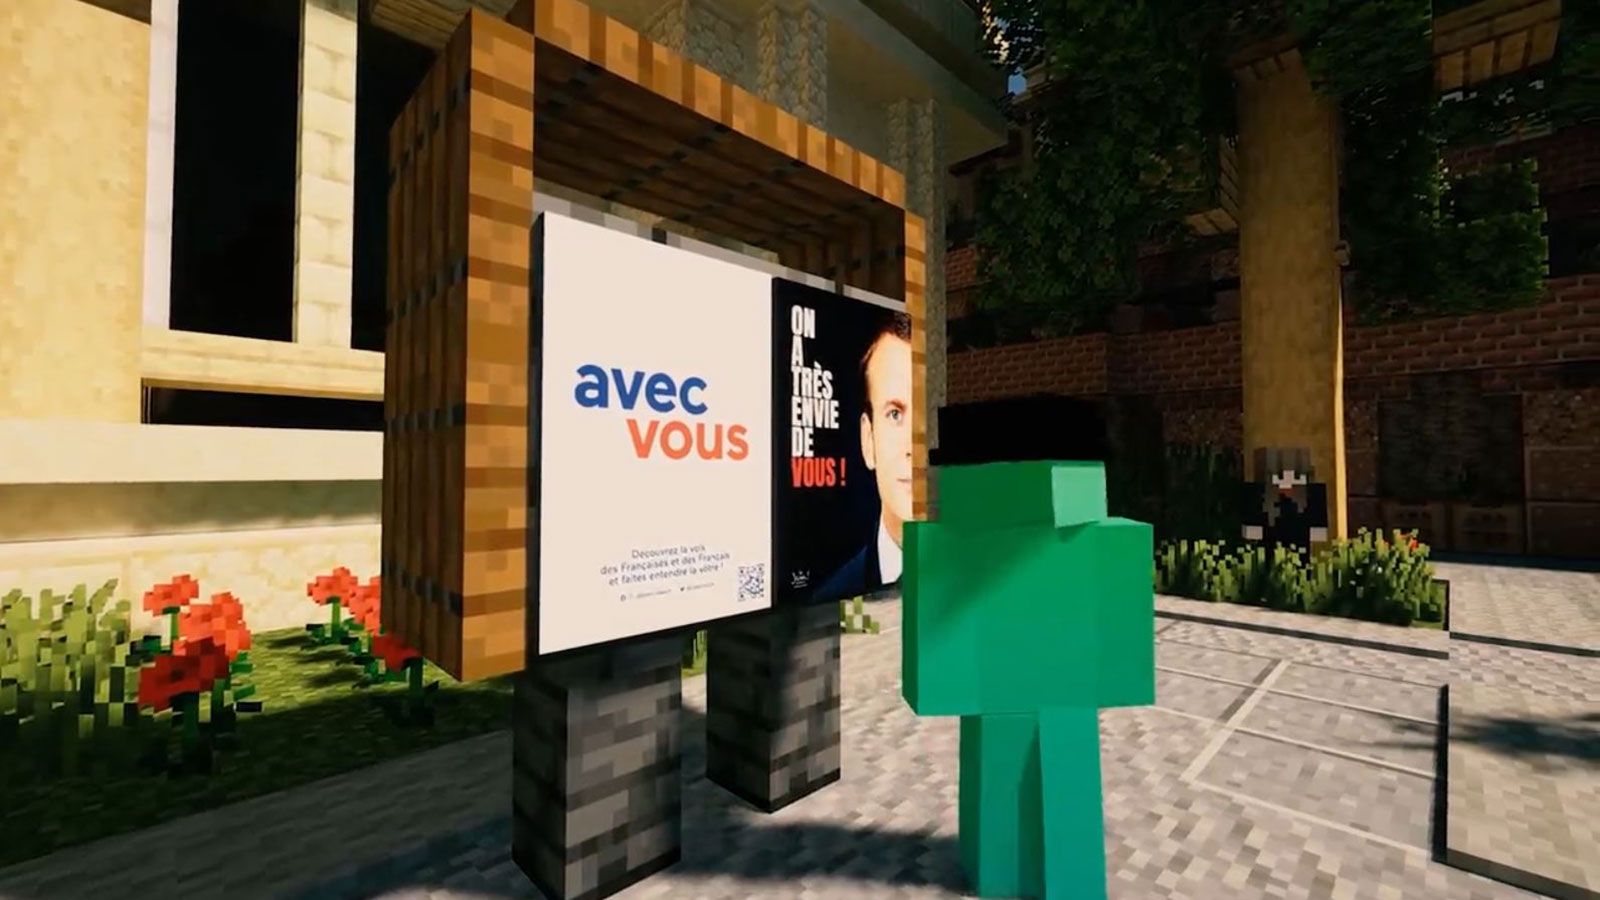 Macron dans le célèbre jeu vidéo « Minecraft » pour continuer sa campagne électorale.